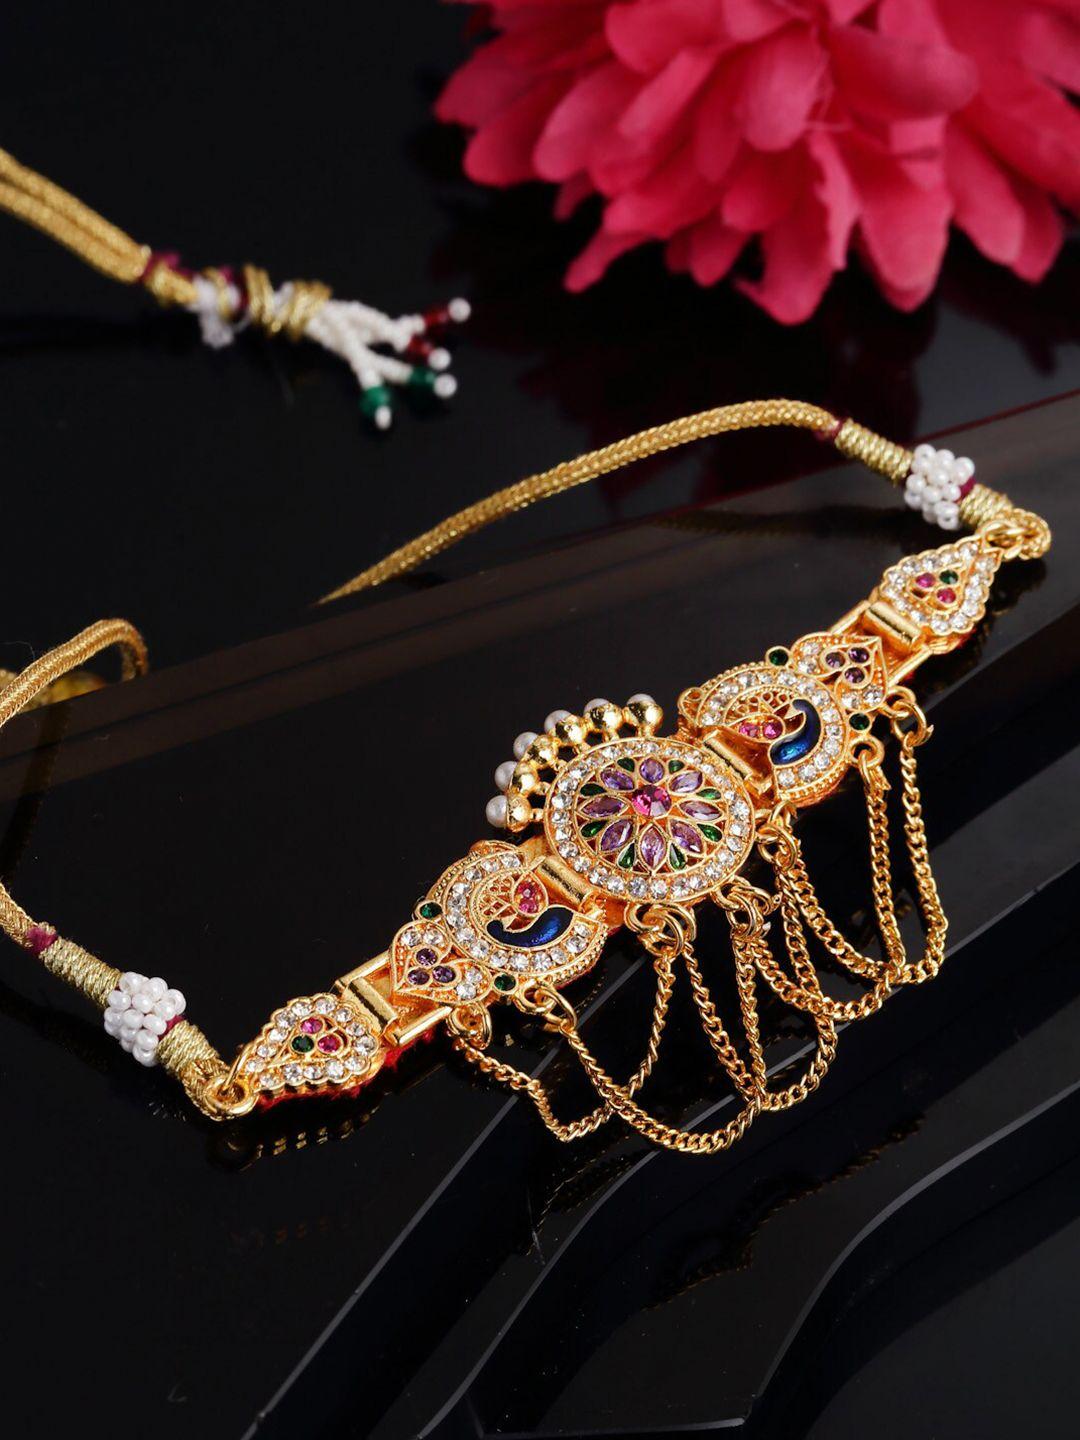 sanjog cubic zirconia meenakari gold plated bangle style bracelet